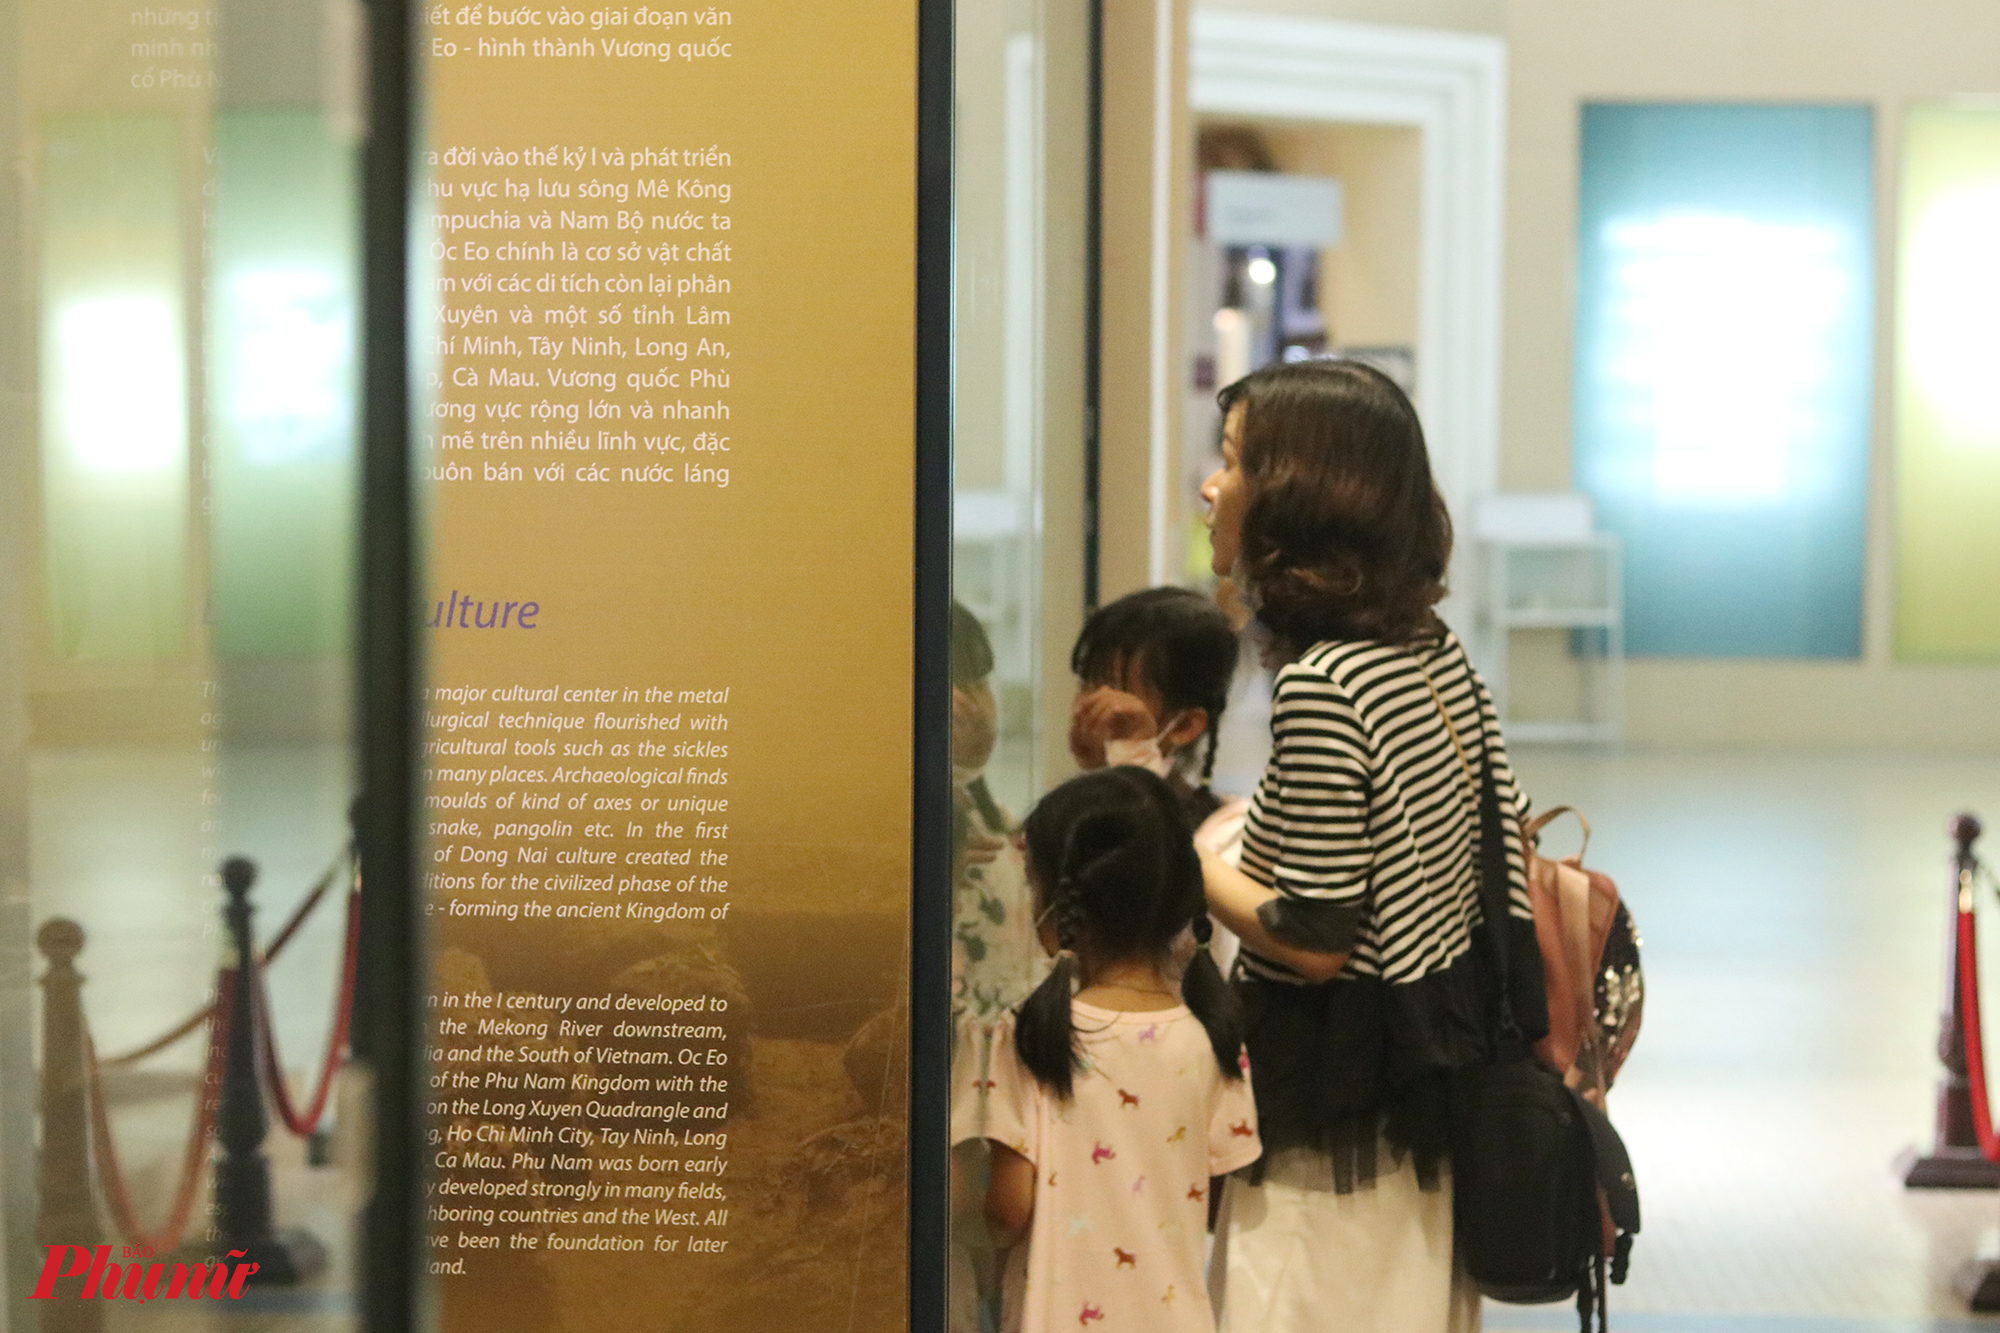 Chị Như (quận 5, TPHCM) cho biết thường dẫn 2 con gái đi tham quan các bảo tàng. Chị đích thân đọc, giải thích cho các con hiểu về hiện vật được trưng bày. Chị nói các con thích tìm hiểu và chị cũng muốn các con có thêm kiến thức, trải nghiệm thông qua việc đi bảo tàng.